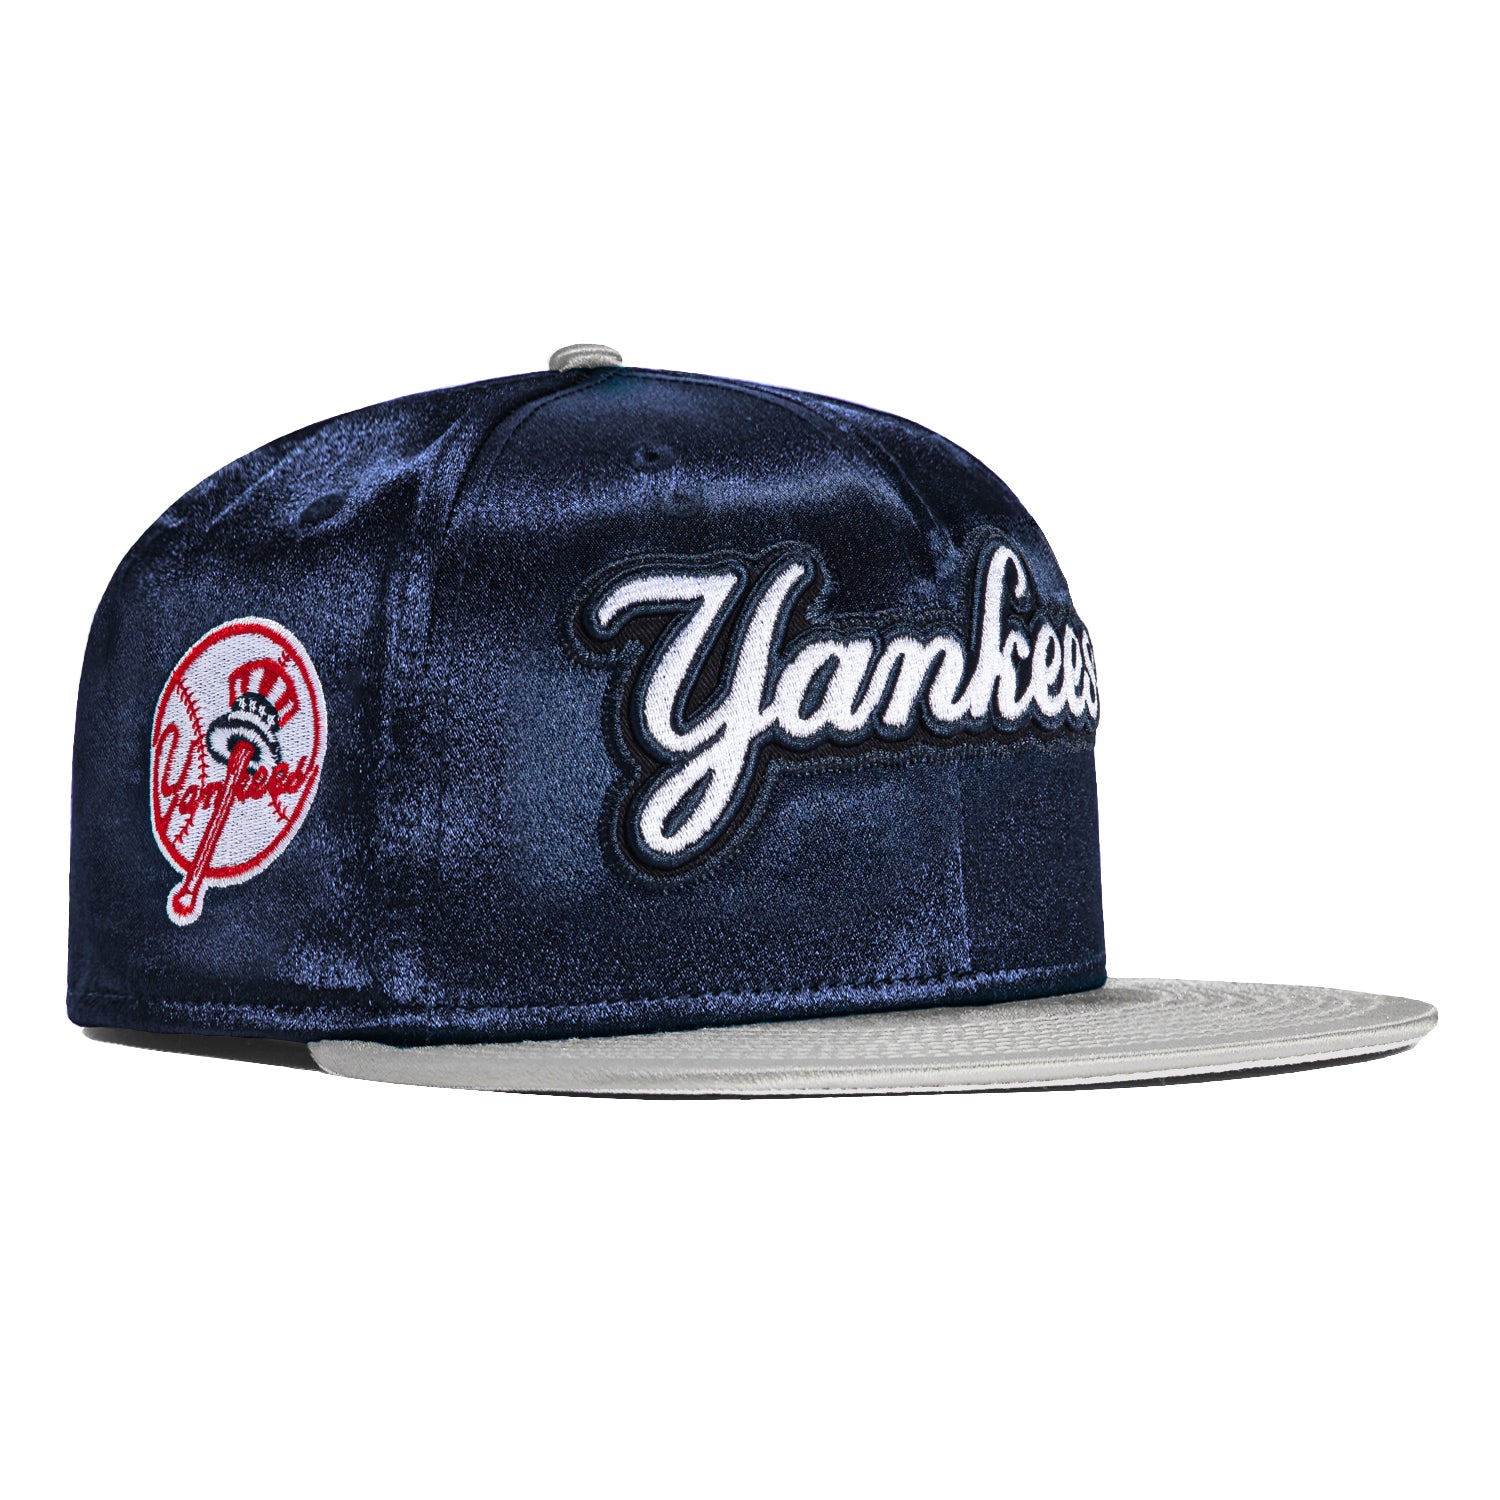 Satin Yankees Trucker Cap by New Era